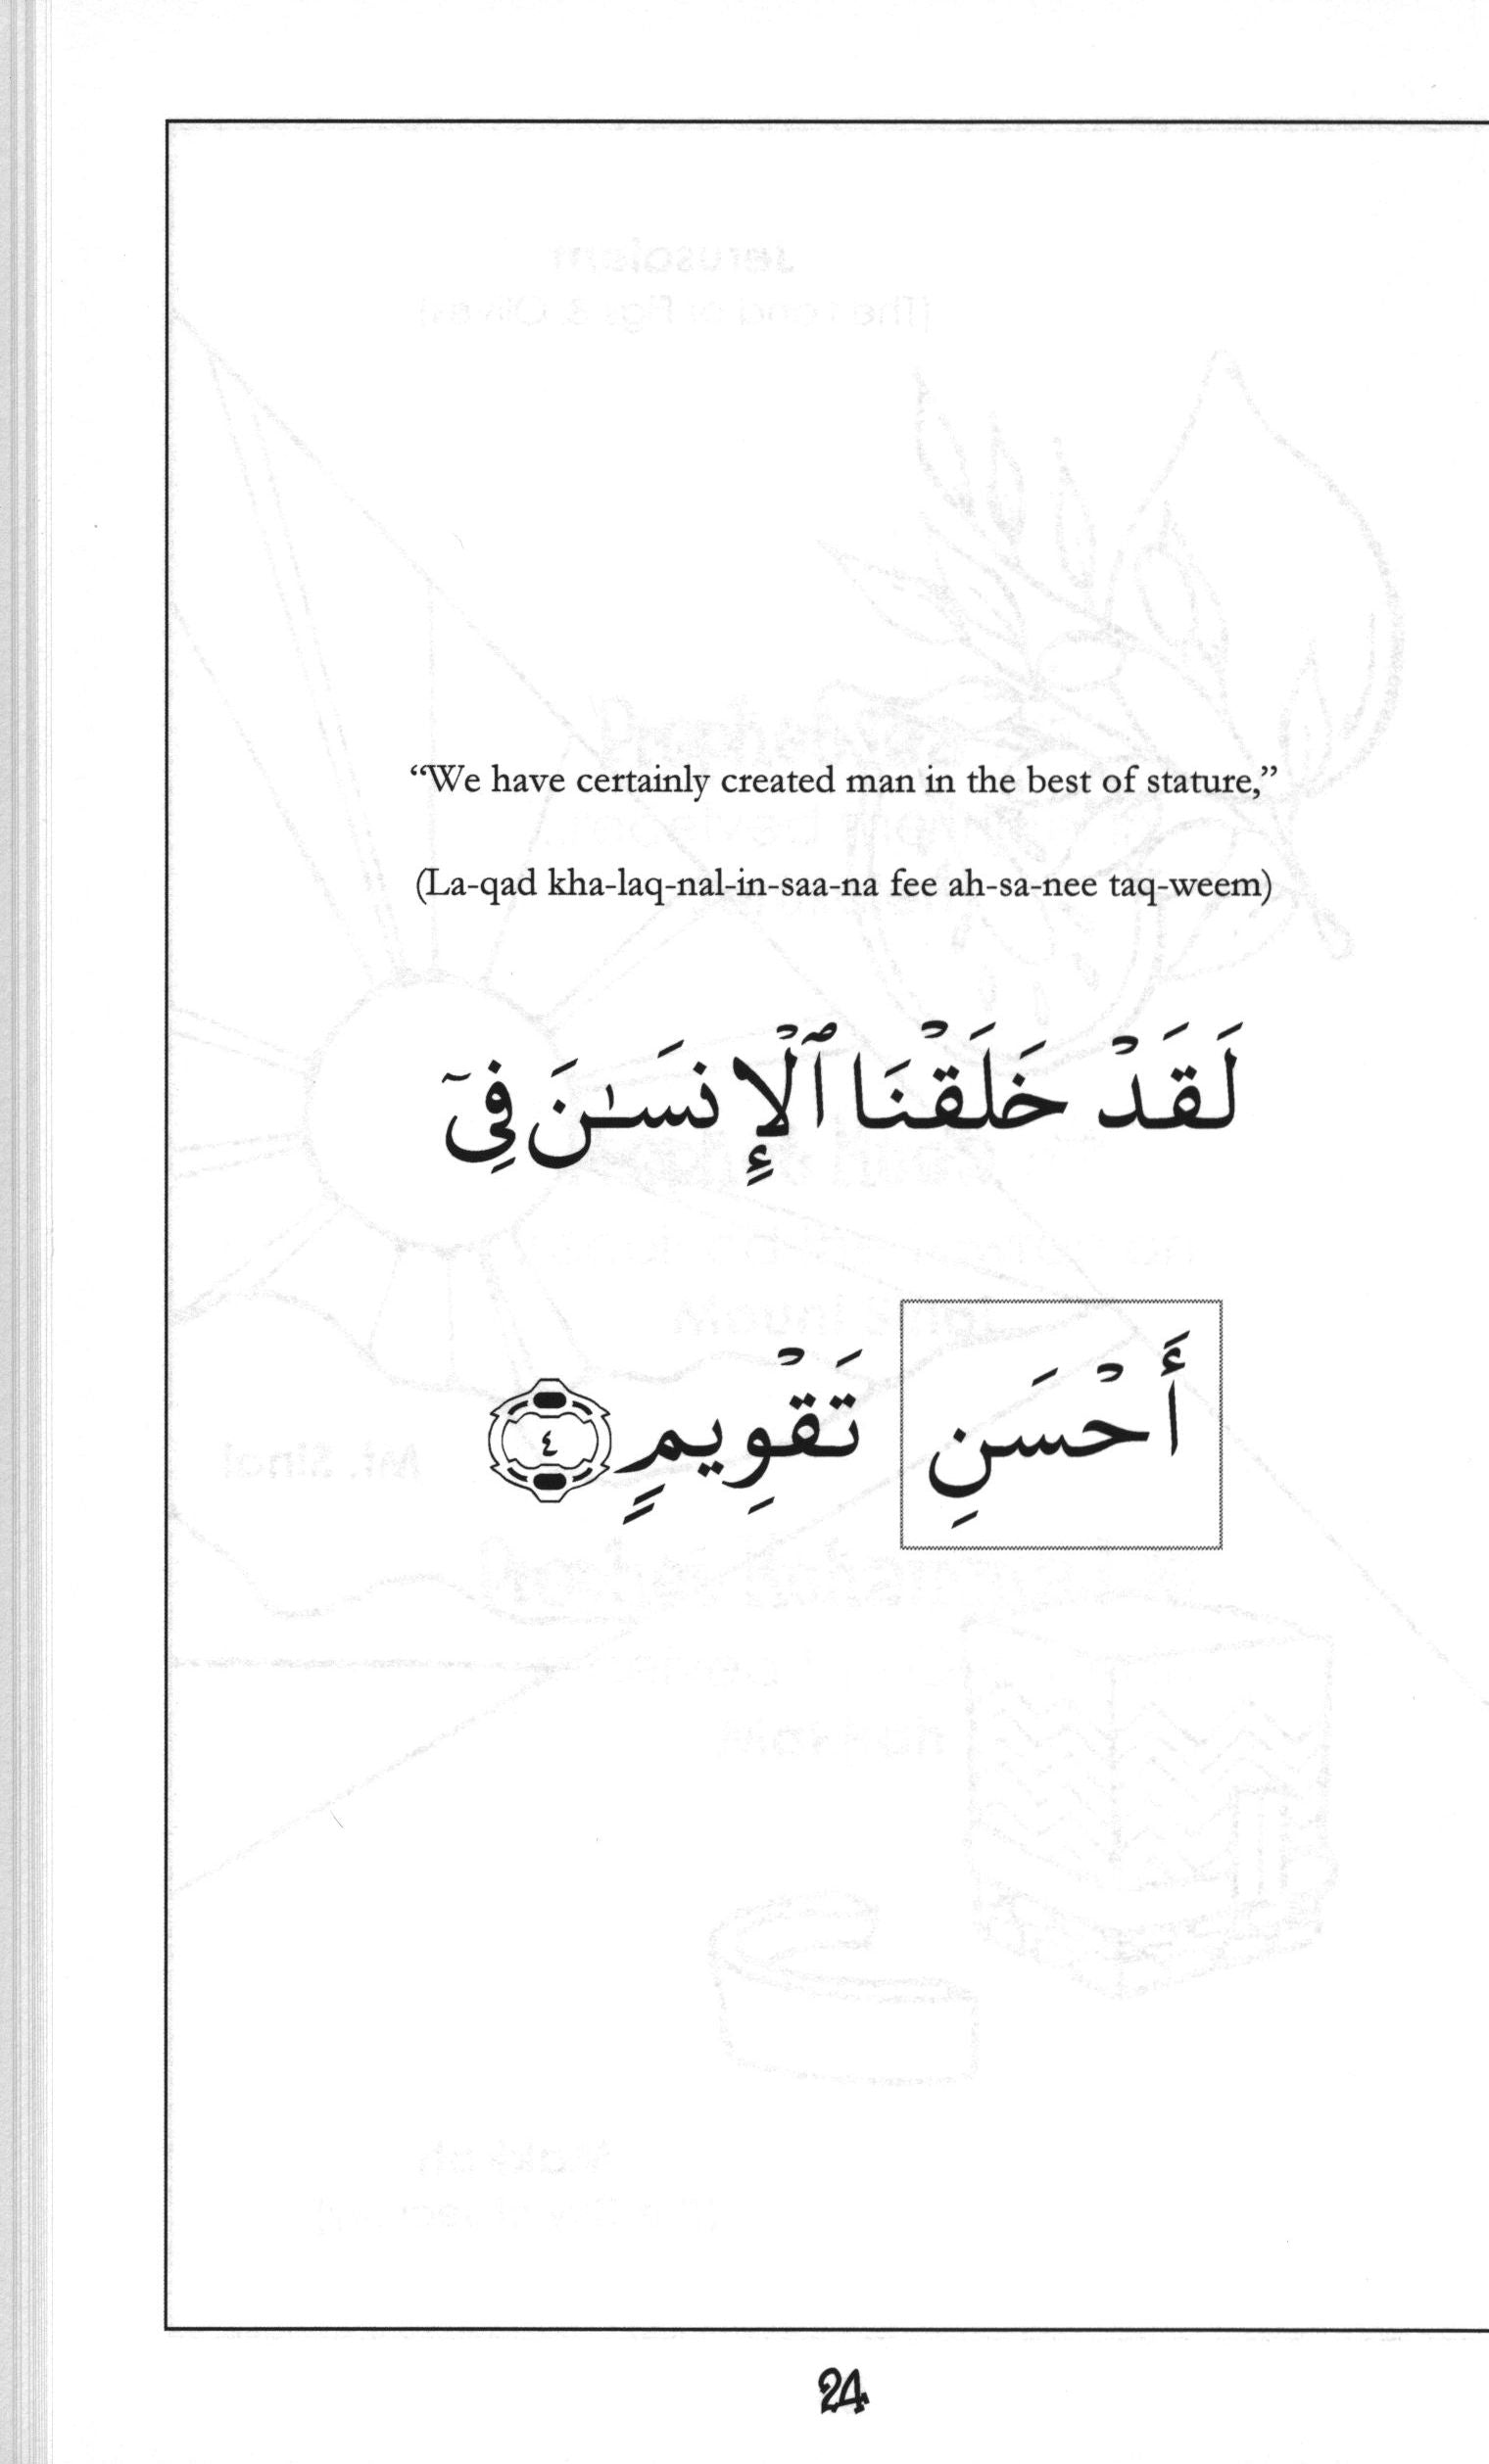 Mini Tafseer Book Suratut-Teen (Surah 95)